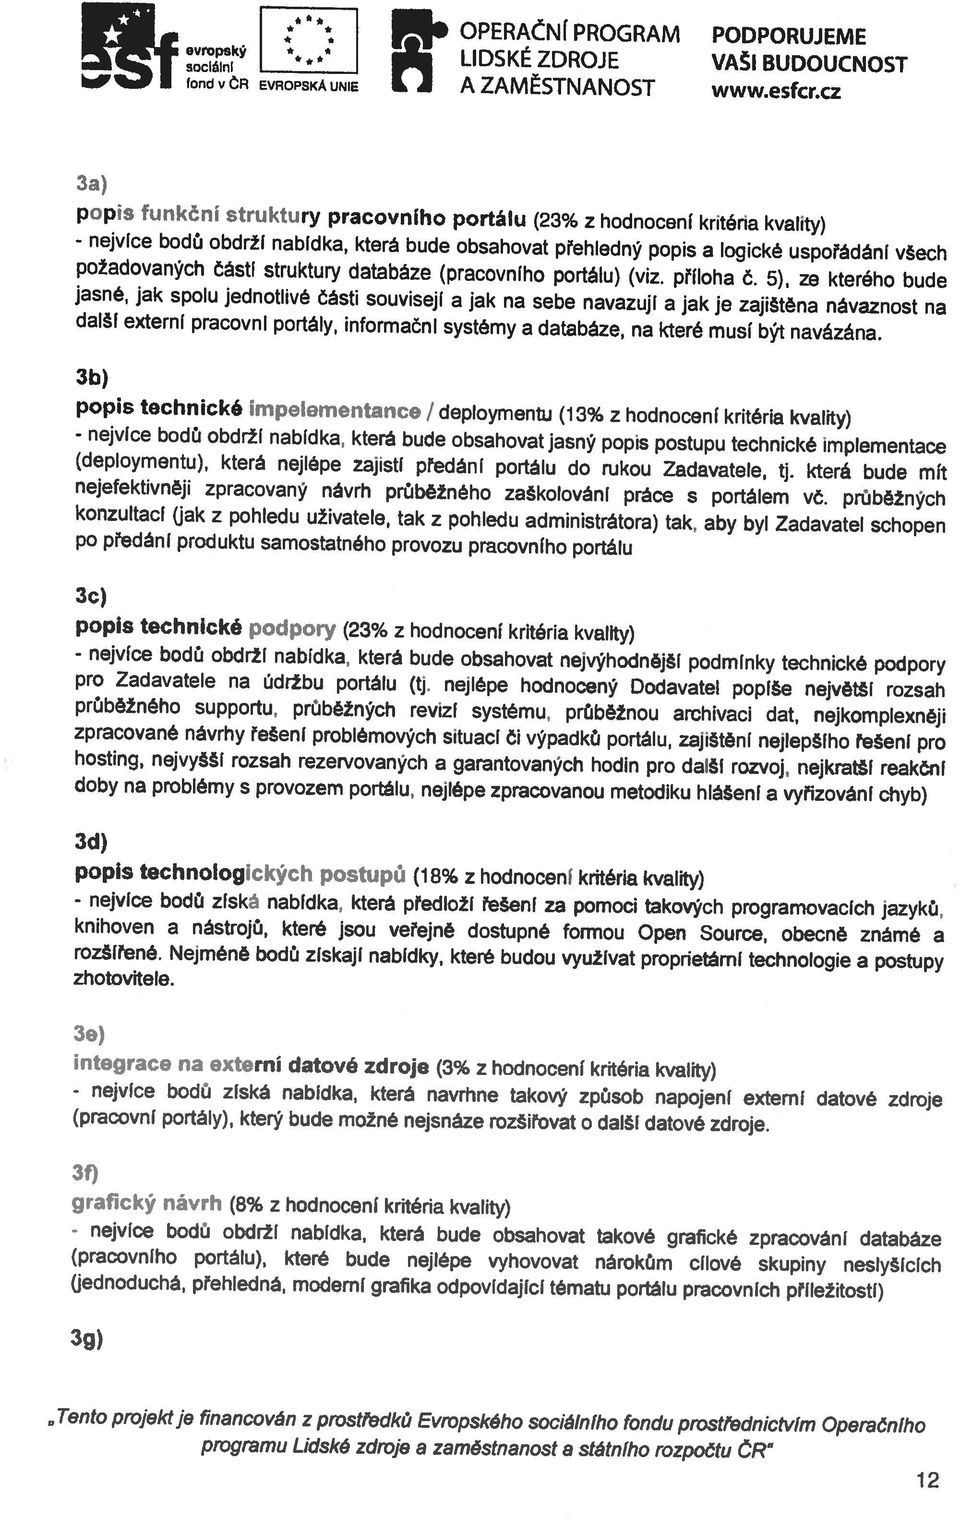 5), ze kterého bude popis funkční struktury pracovního portálu (23% z hodnocení kritéria kvality) fond v čn EVROPSKÁ UNIE A ZAMESTNANOST www.esfcr.